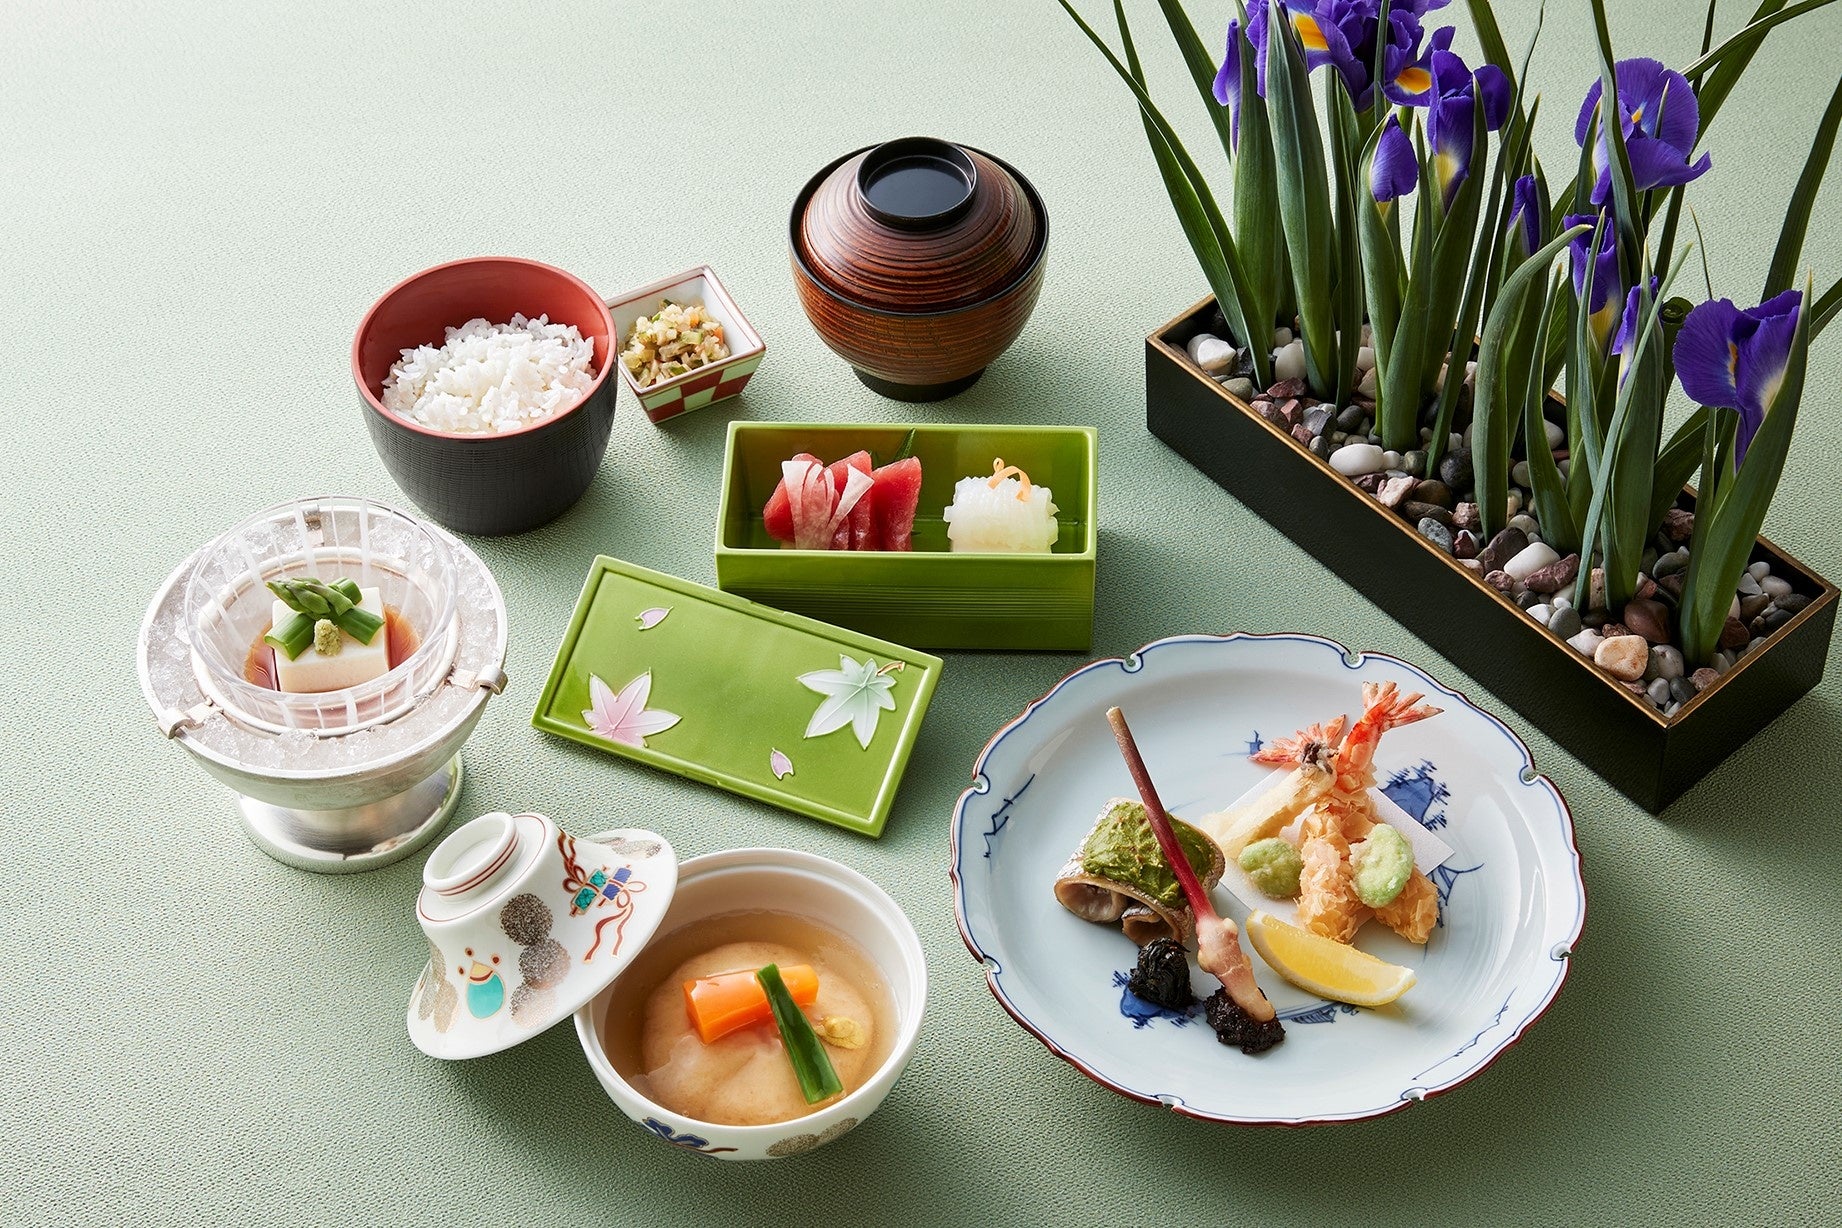 【ロイヤルパークホテル】日本料理「源氏香」にて、月替わりのランチメニュー「季楽御膳」が新登場。